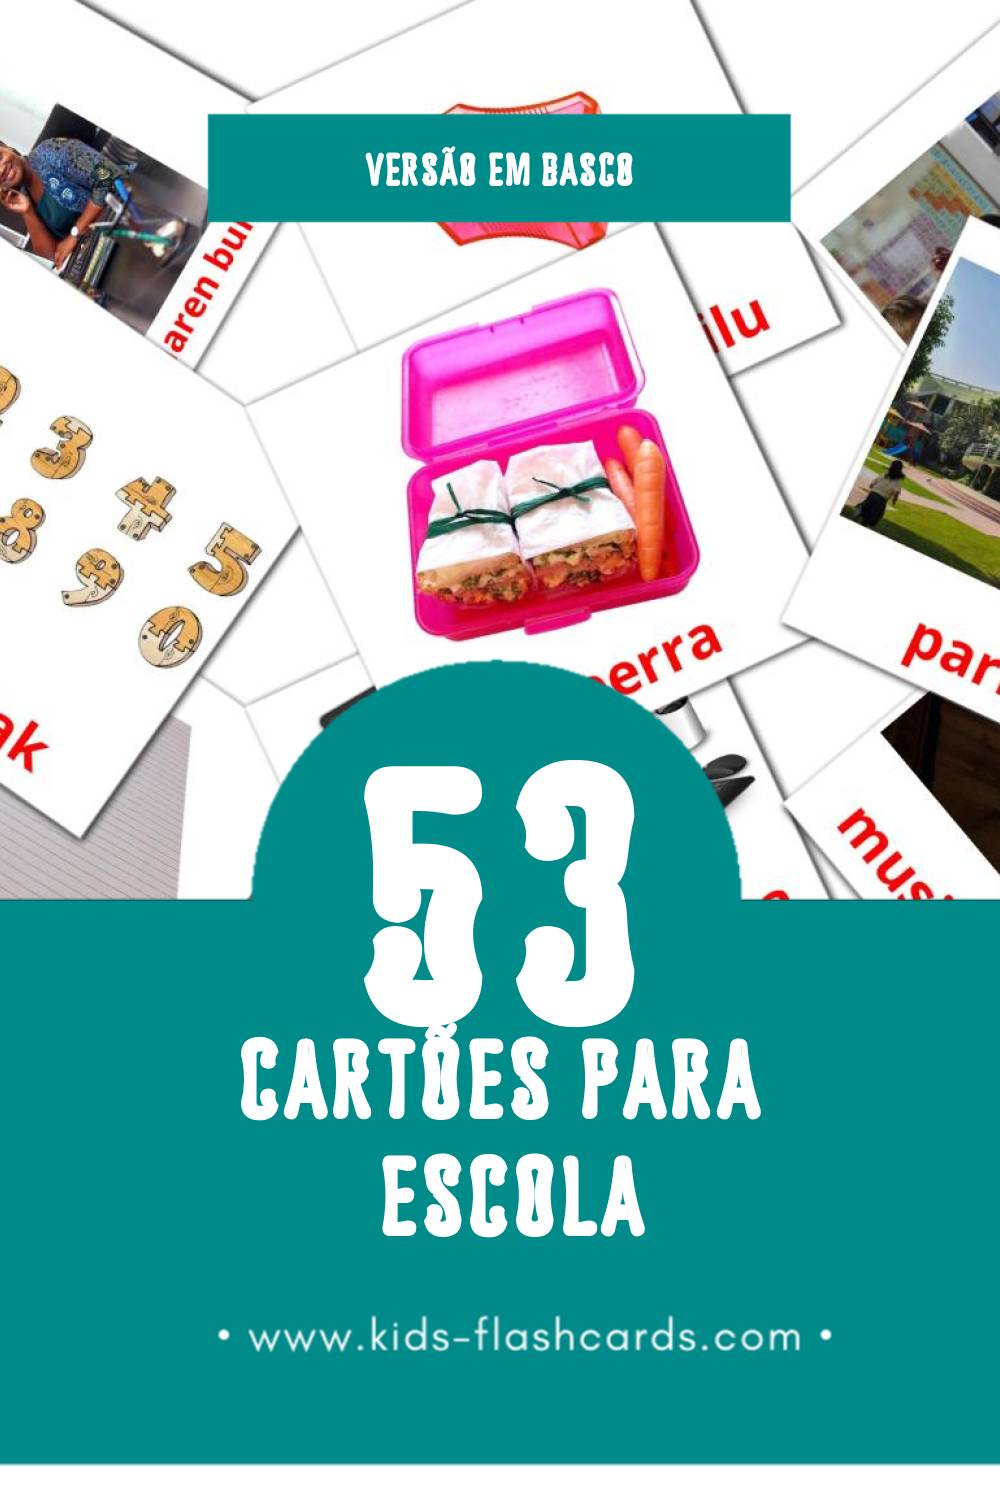 Flashcards de Eskola Visuais para Toddlers (53 cartões em Basco)